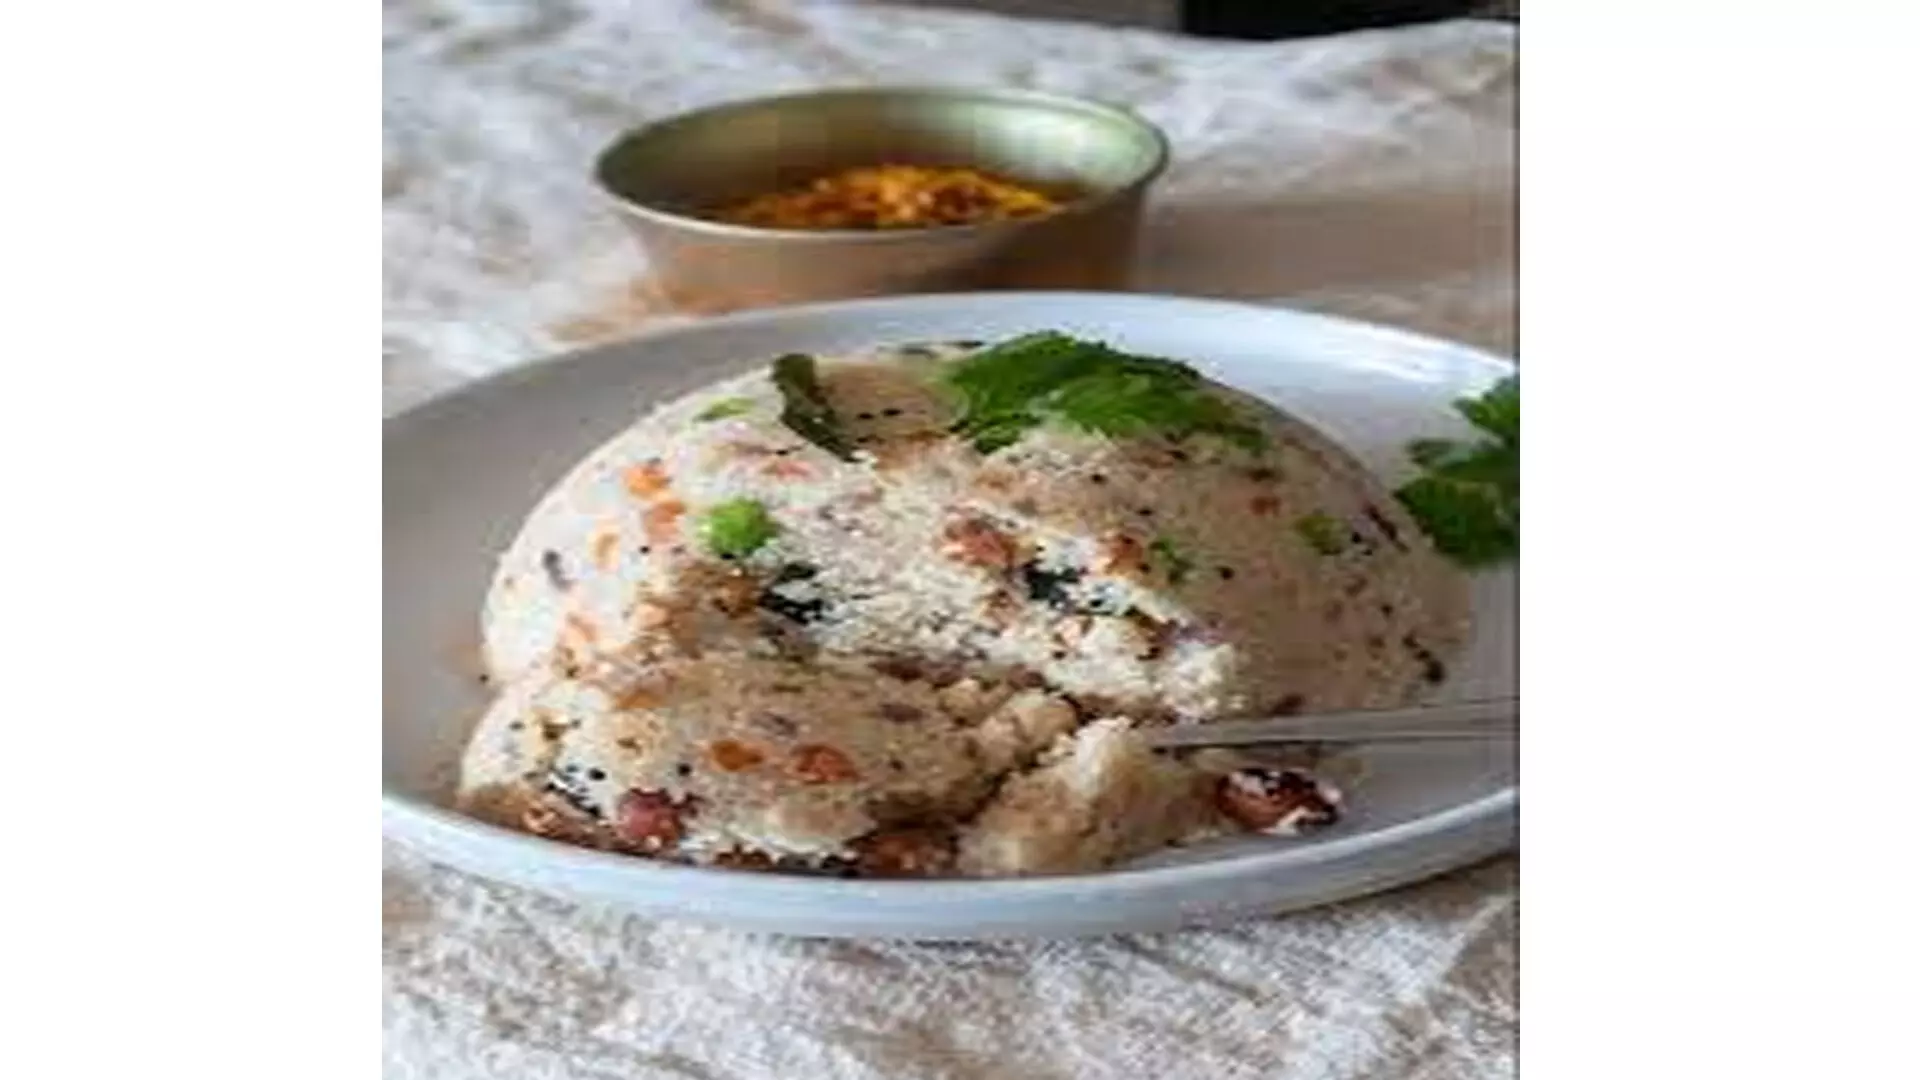 नाश्ते के लिए साउथ इंडियन उपमा, मिनटों में बनाएं रेसिपी